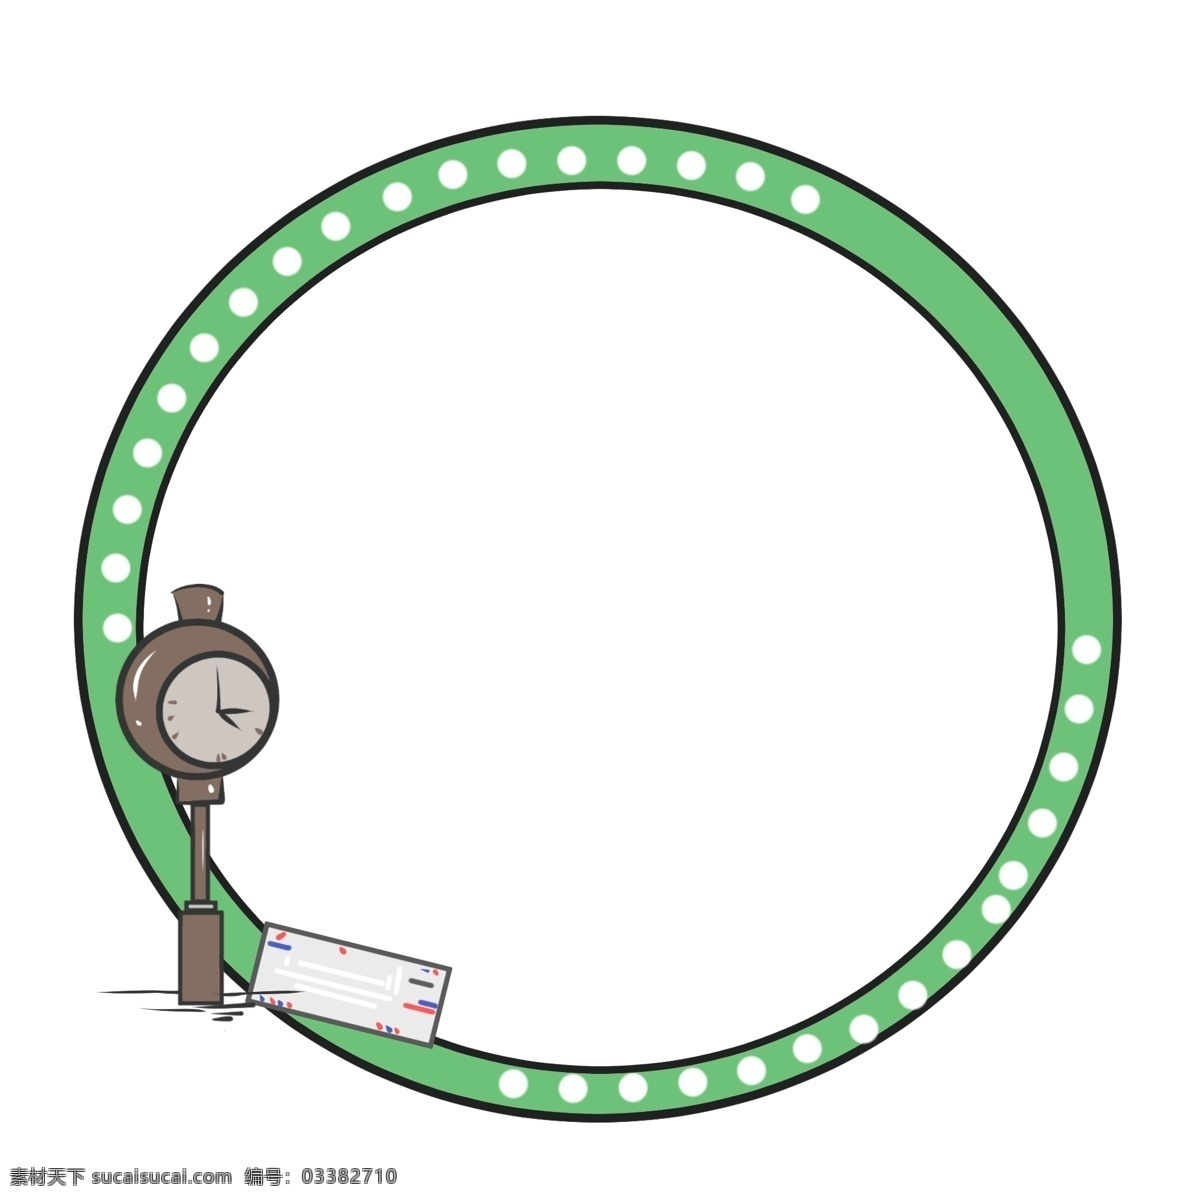 邮局 绿色 边框 插画 邮局边框插画 绿色边框 深棕色 立式 钟表 装饰 白色波点 圆环形边框 信件装饰